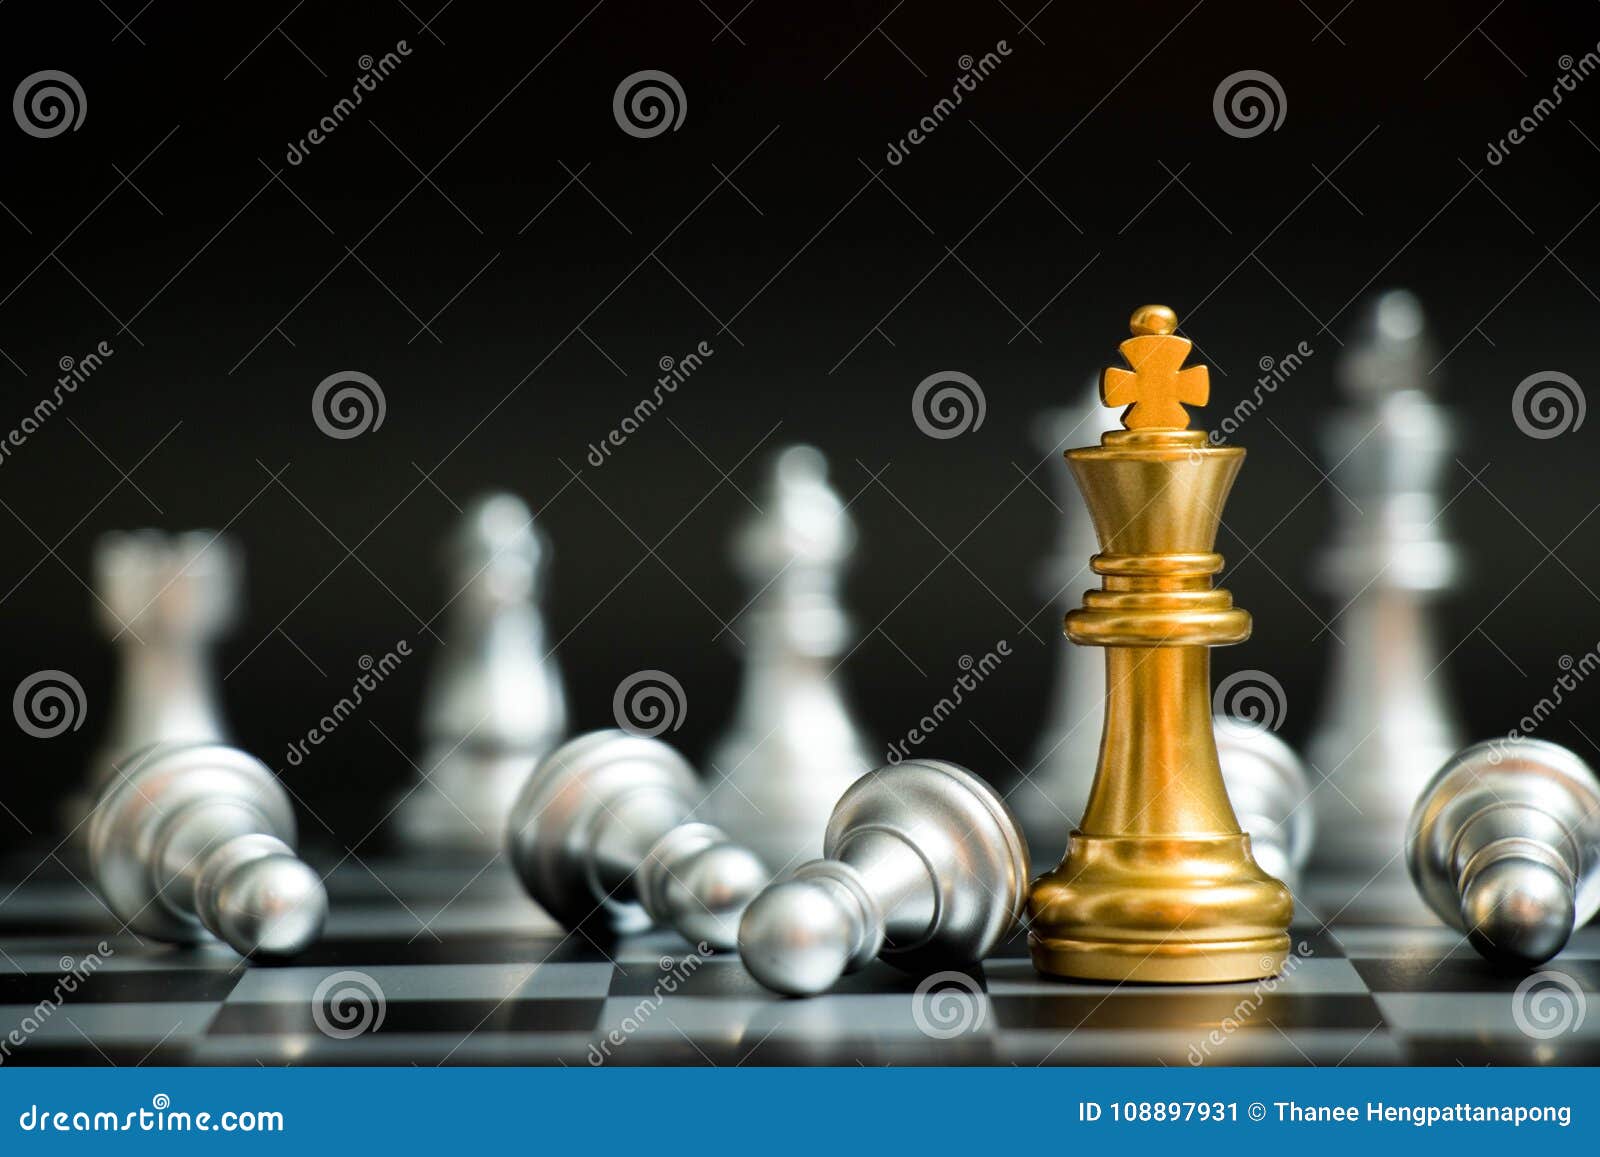 Mão segurando o rei do xadrez de ouro sobre o rei do xadrez de prata